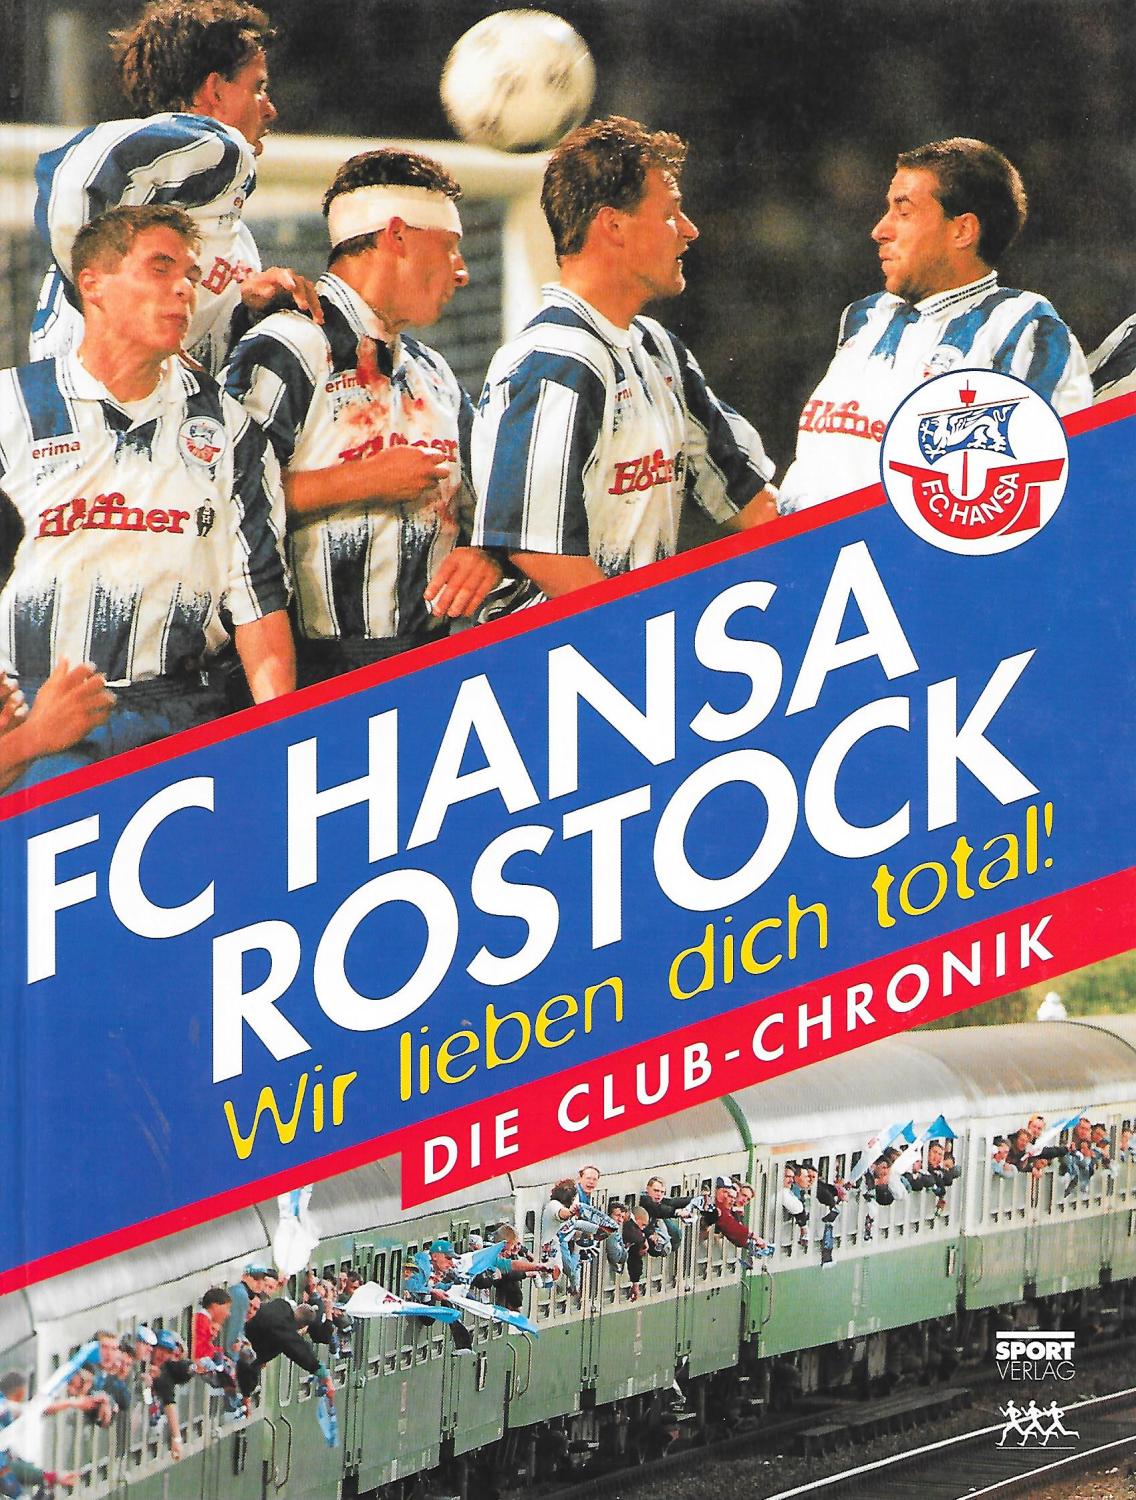 FC Hansa Rostock - Wir lieben dich total! Die Club - Chronik - Autorengemeinschaft